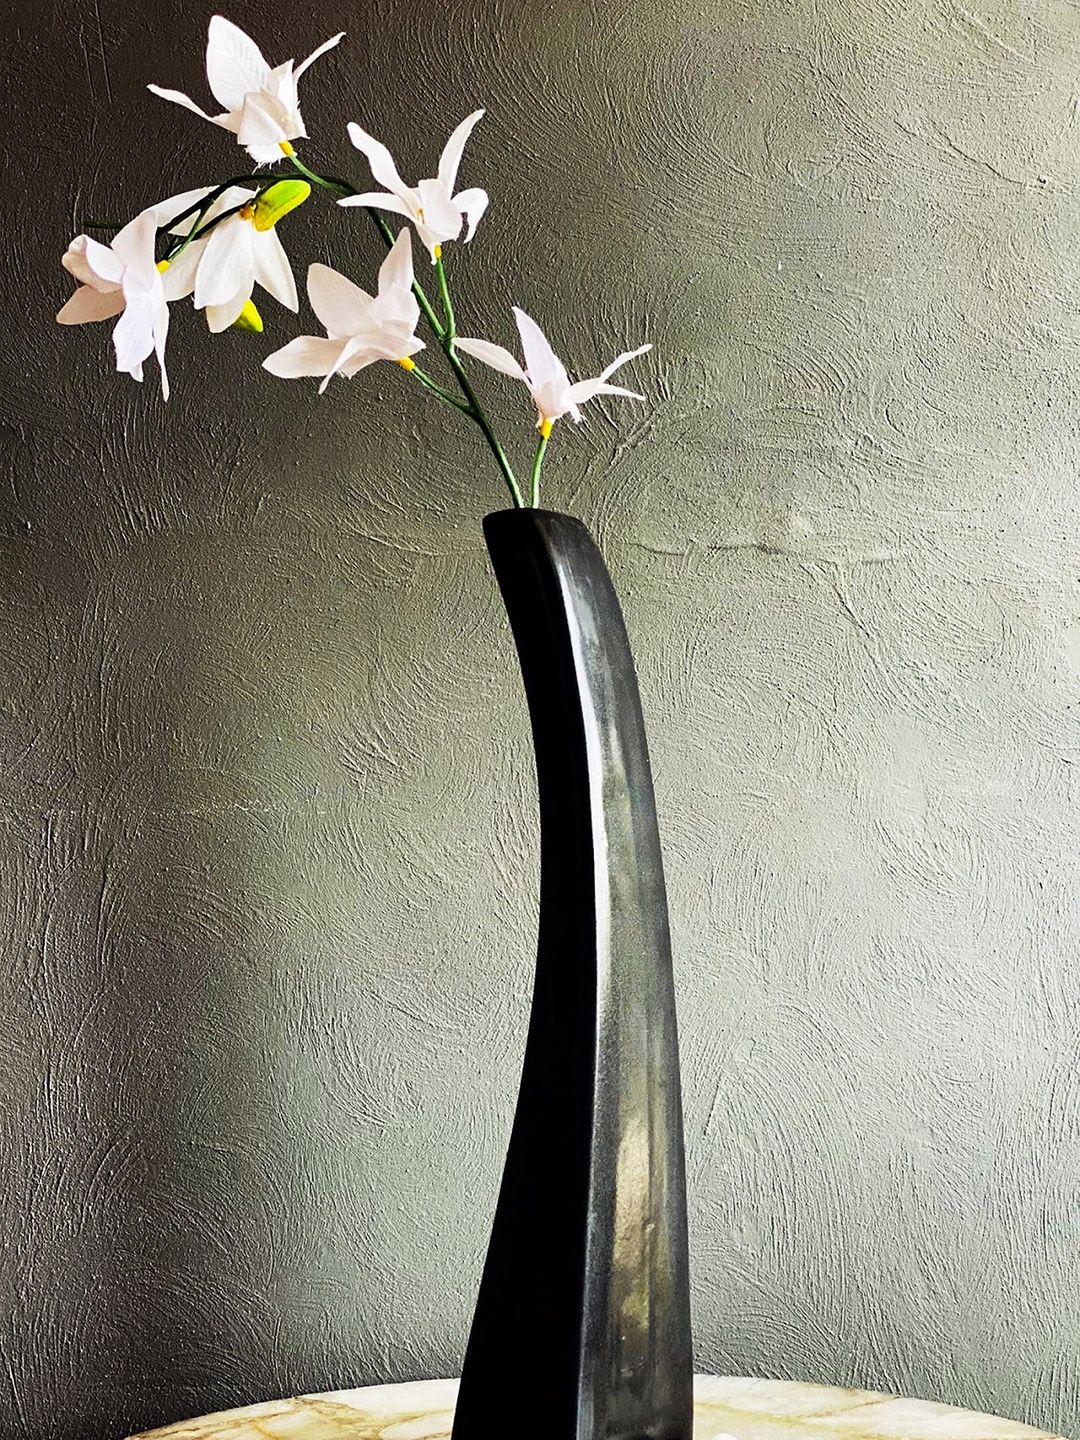 Folkstorys Black Solid Ceramic Vase Price in India